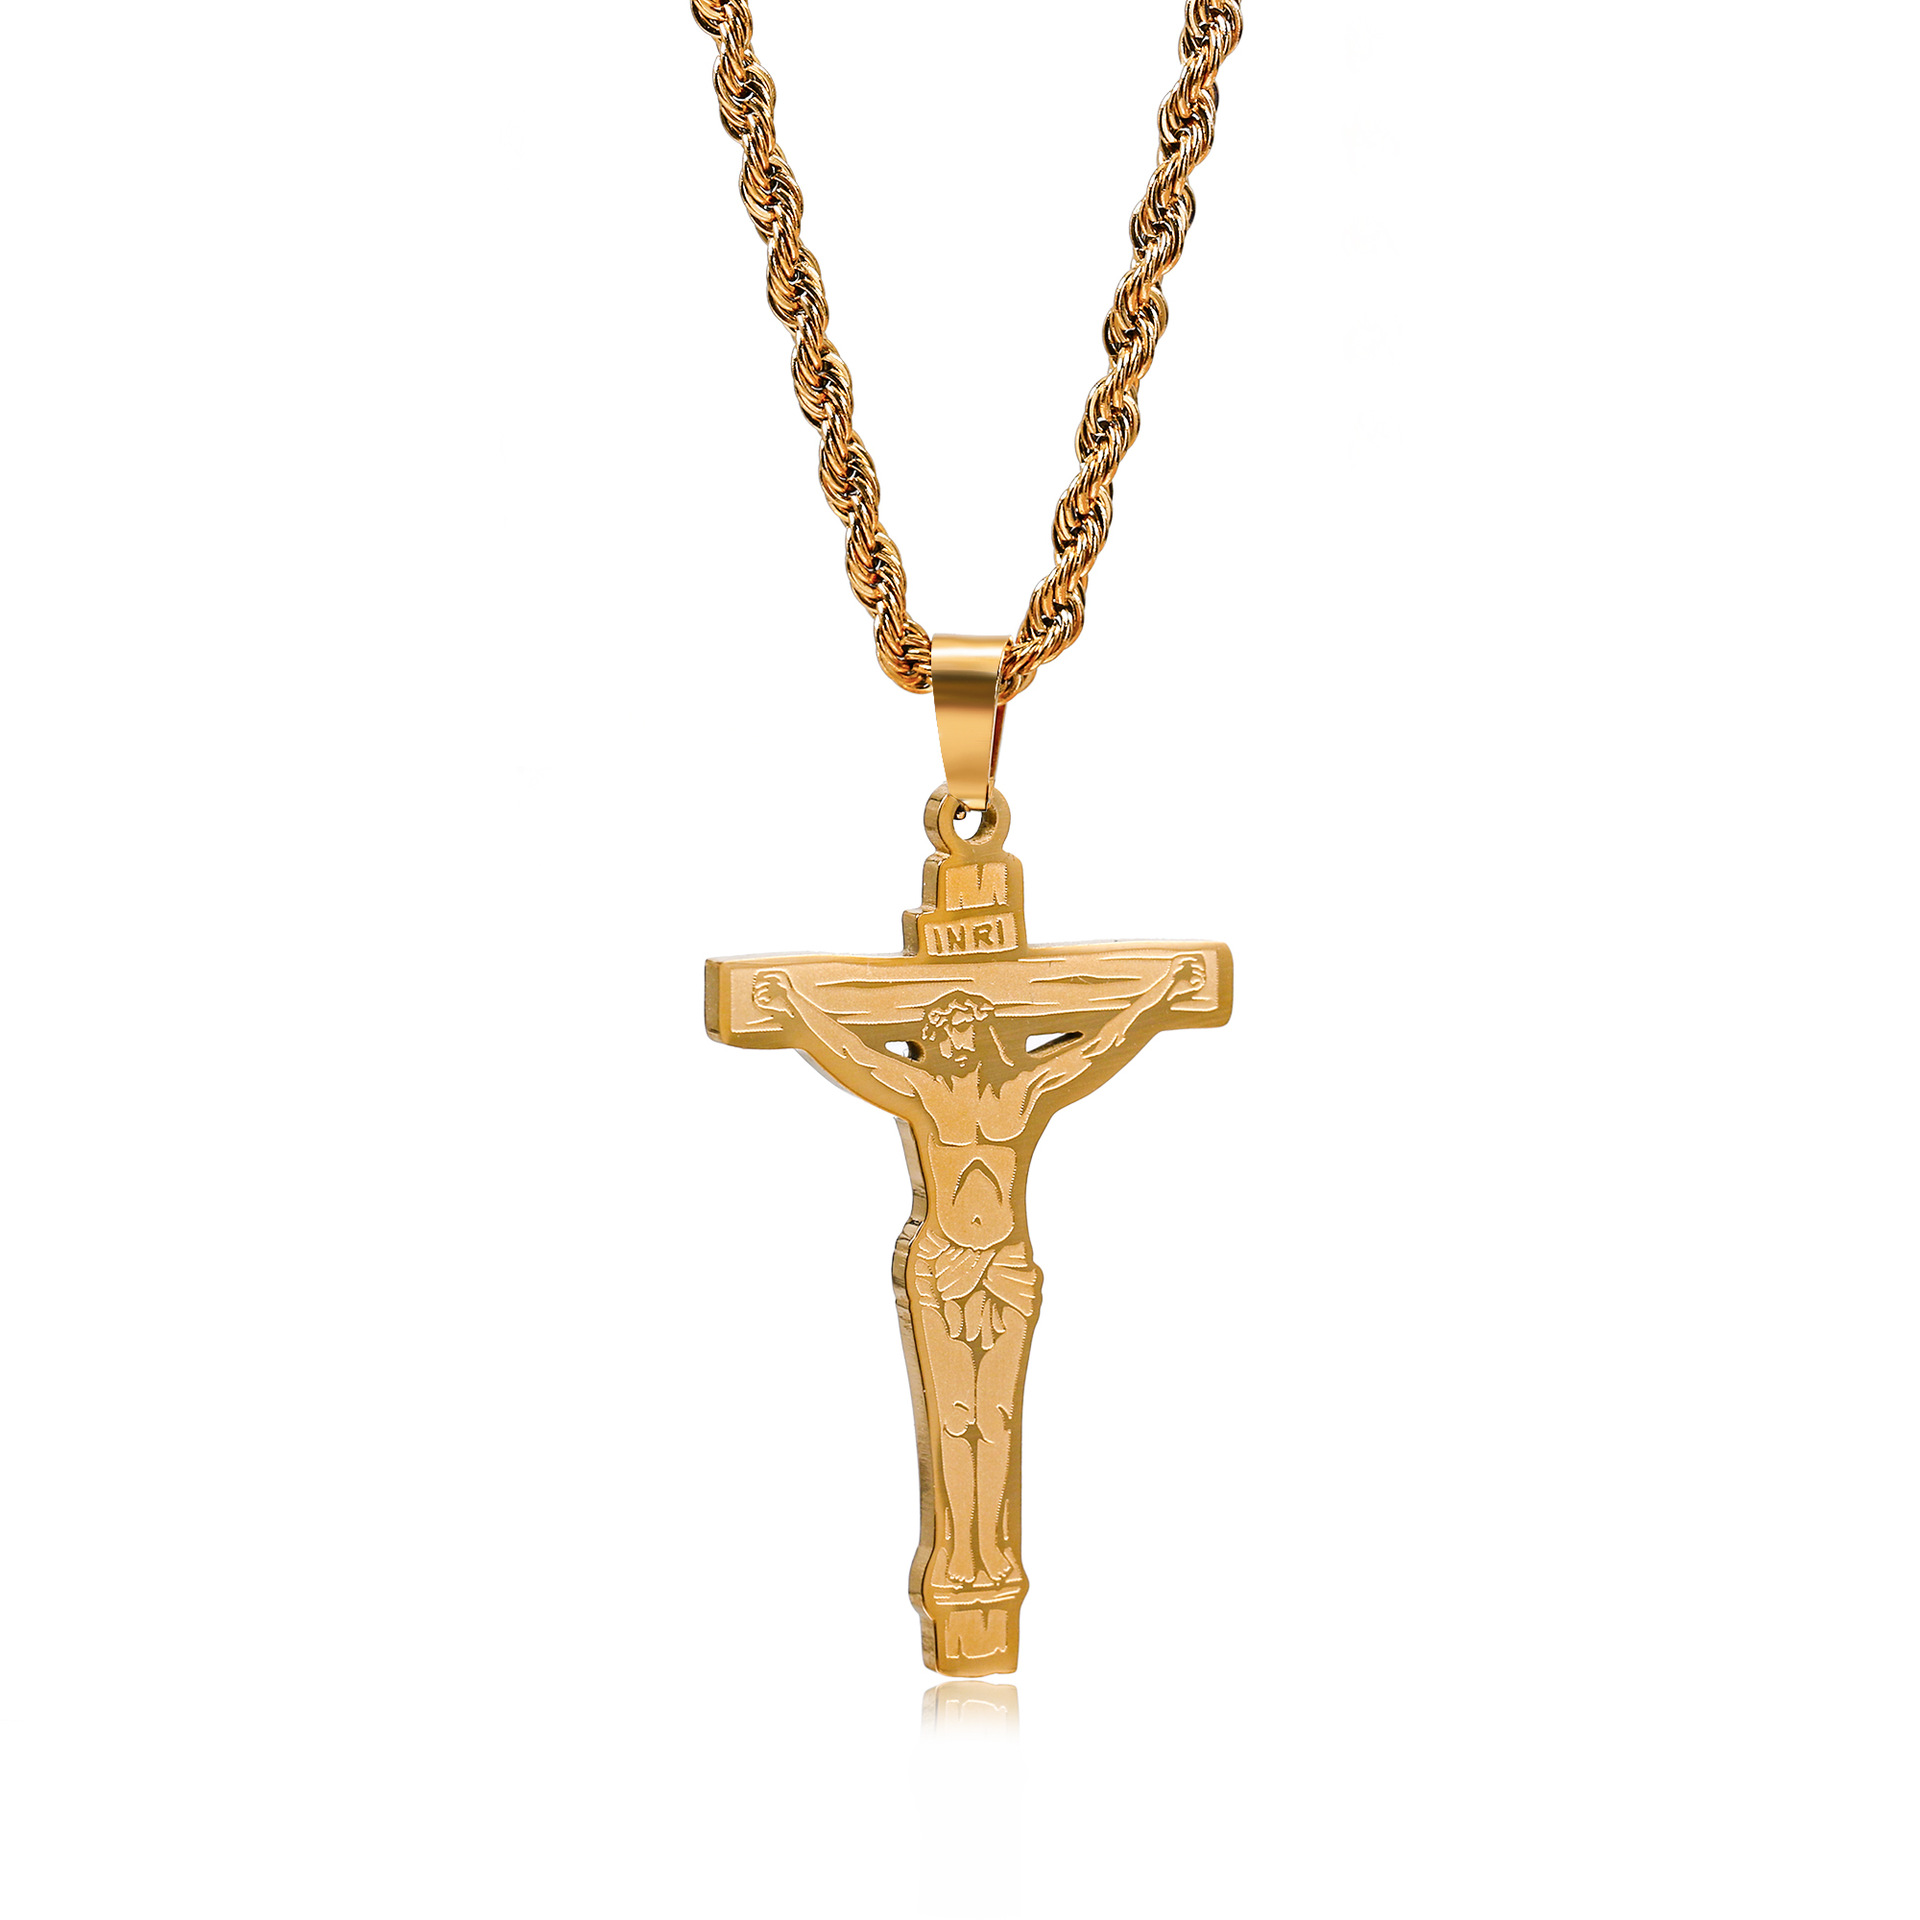 4:Twist chain gold